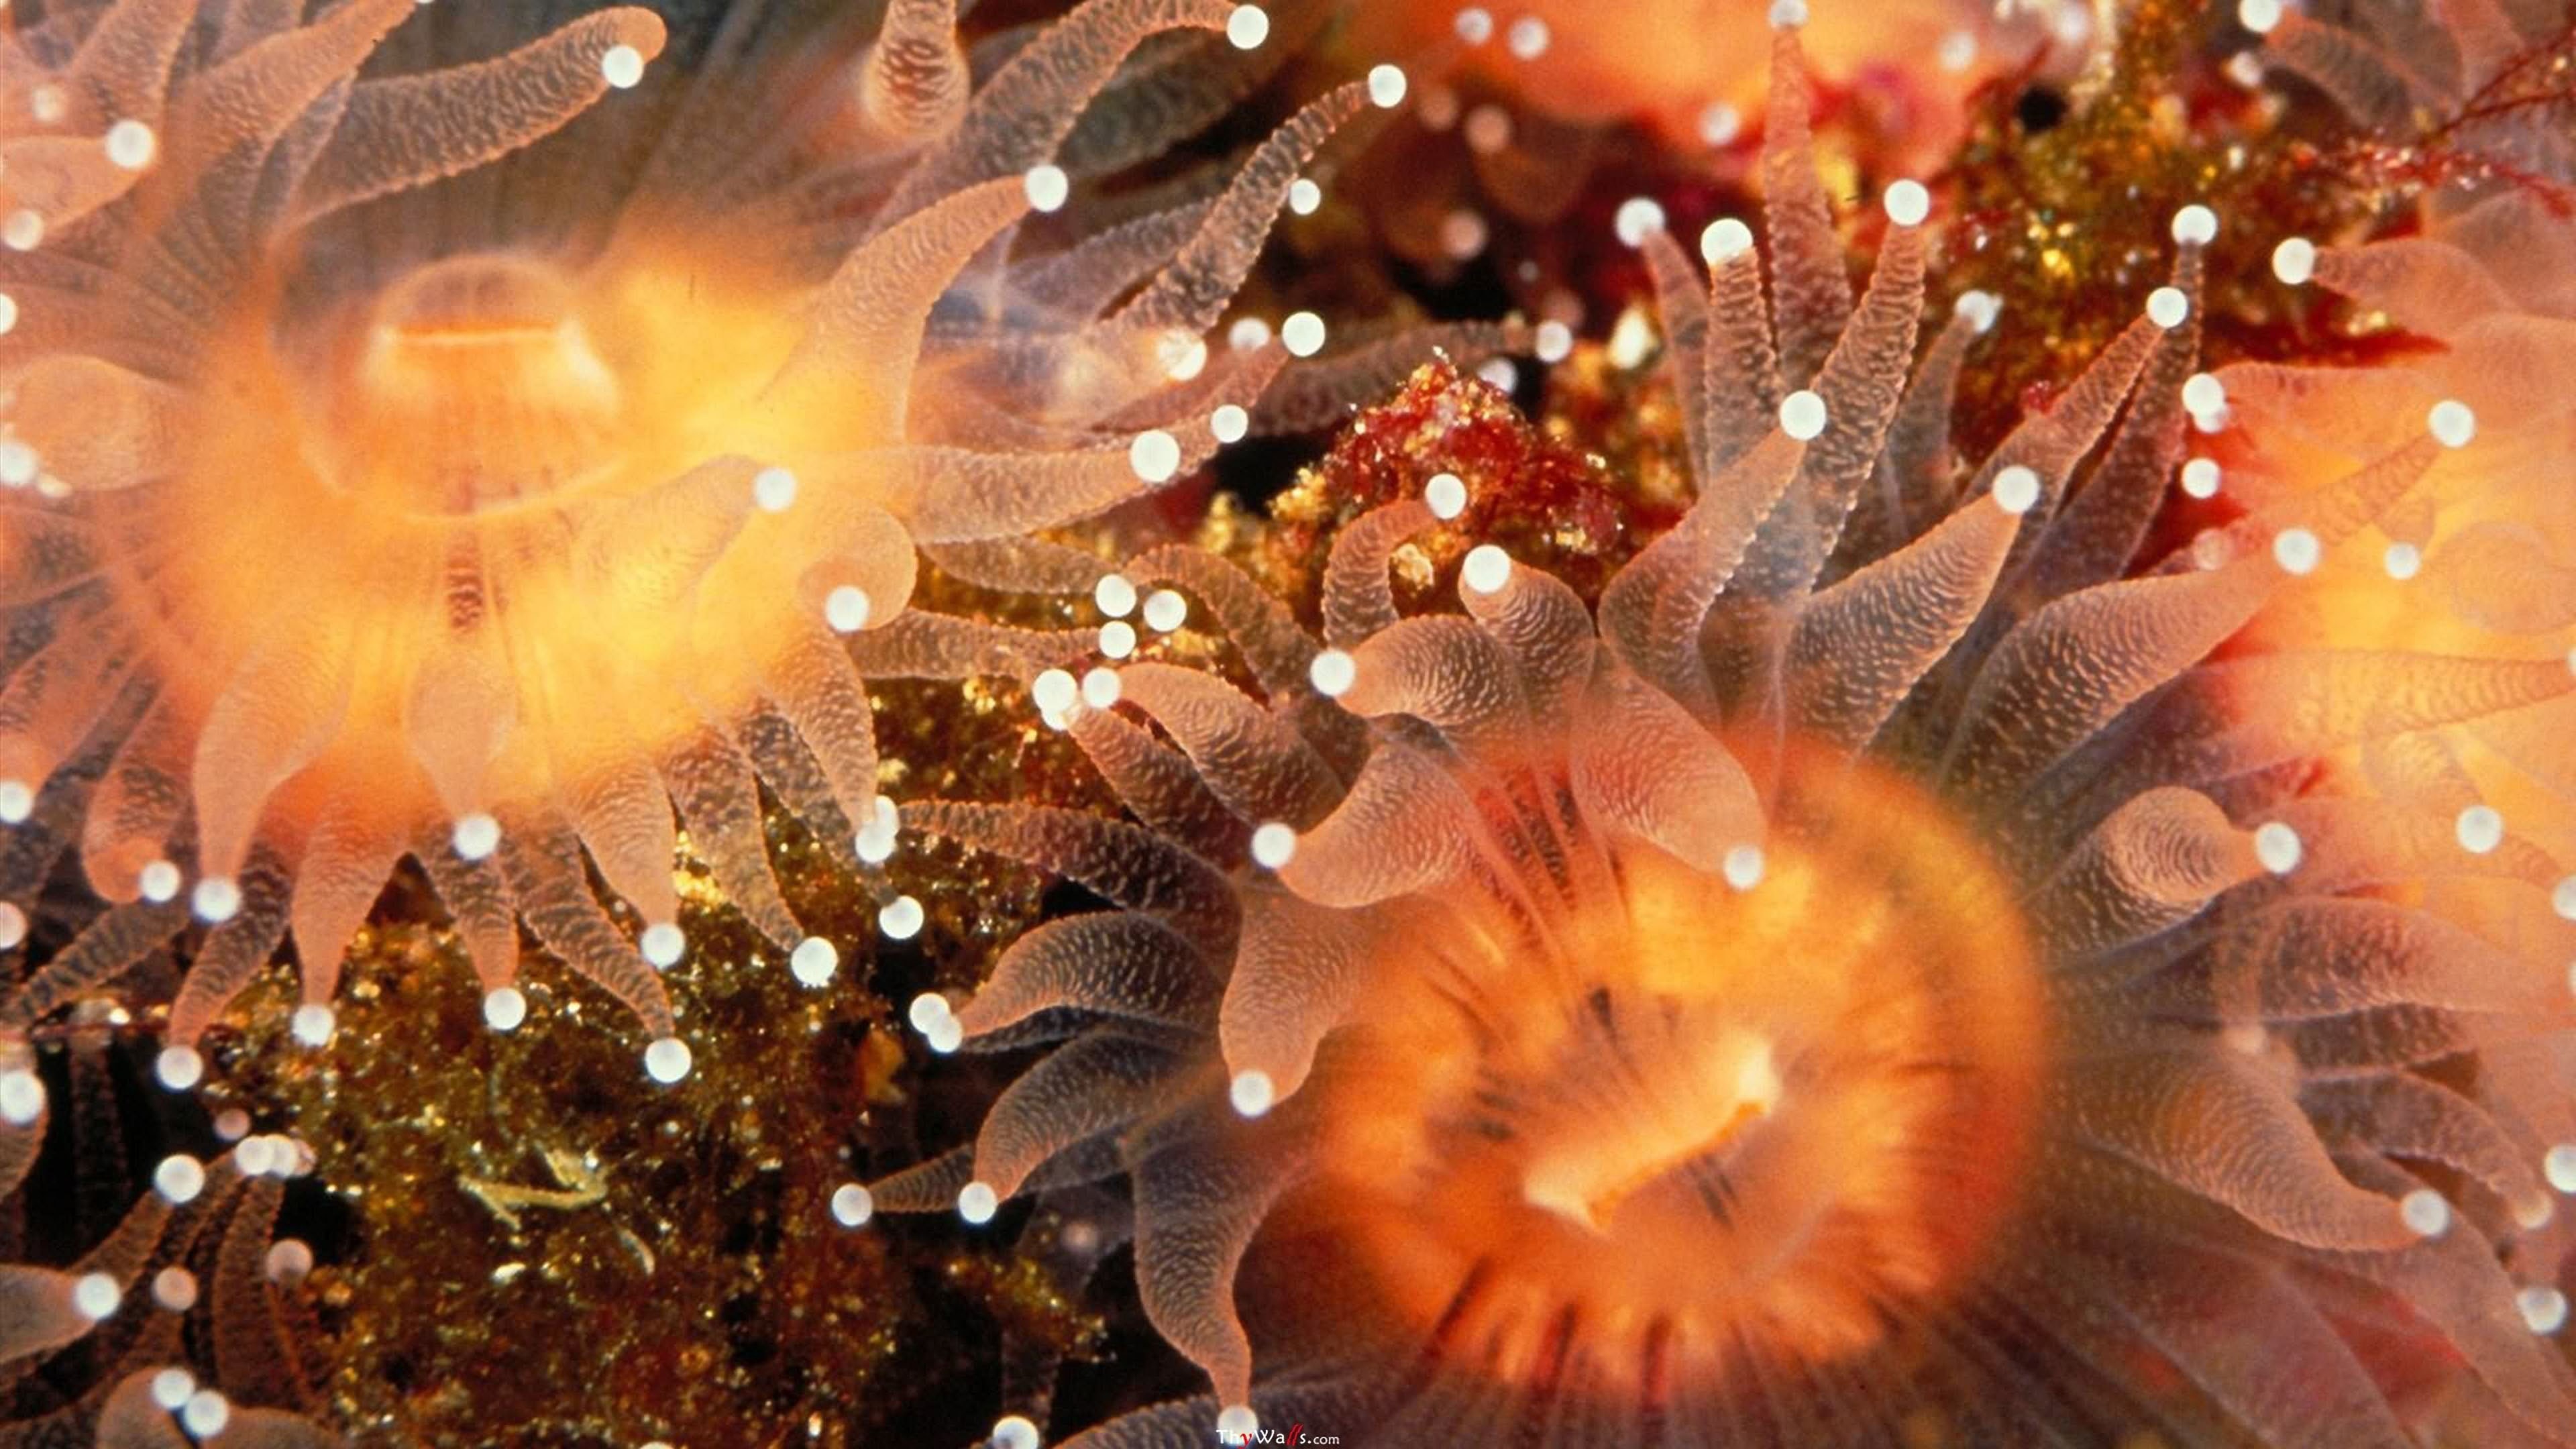 Purple sea anemone, Reef tank beauty, Uplifting wallpapers, Jill Malek designs, 3840x2160 4K Desktop